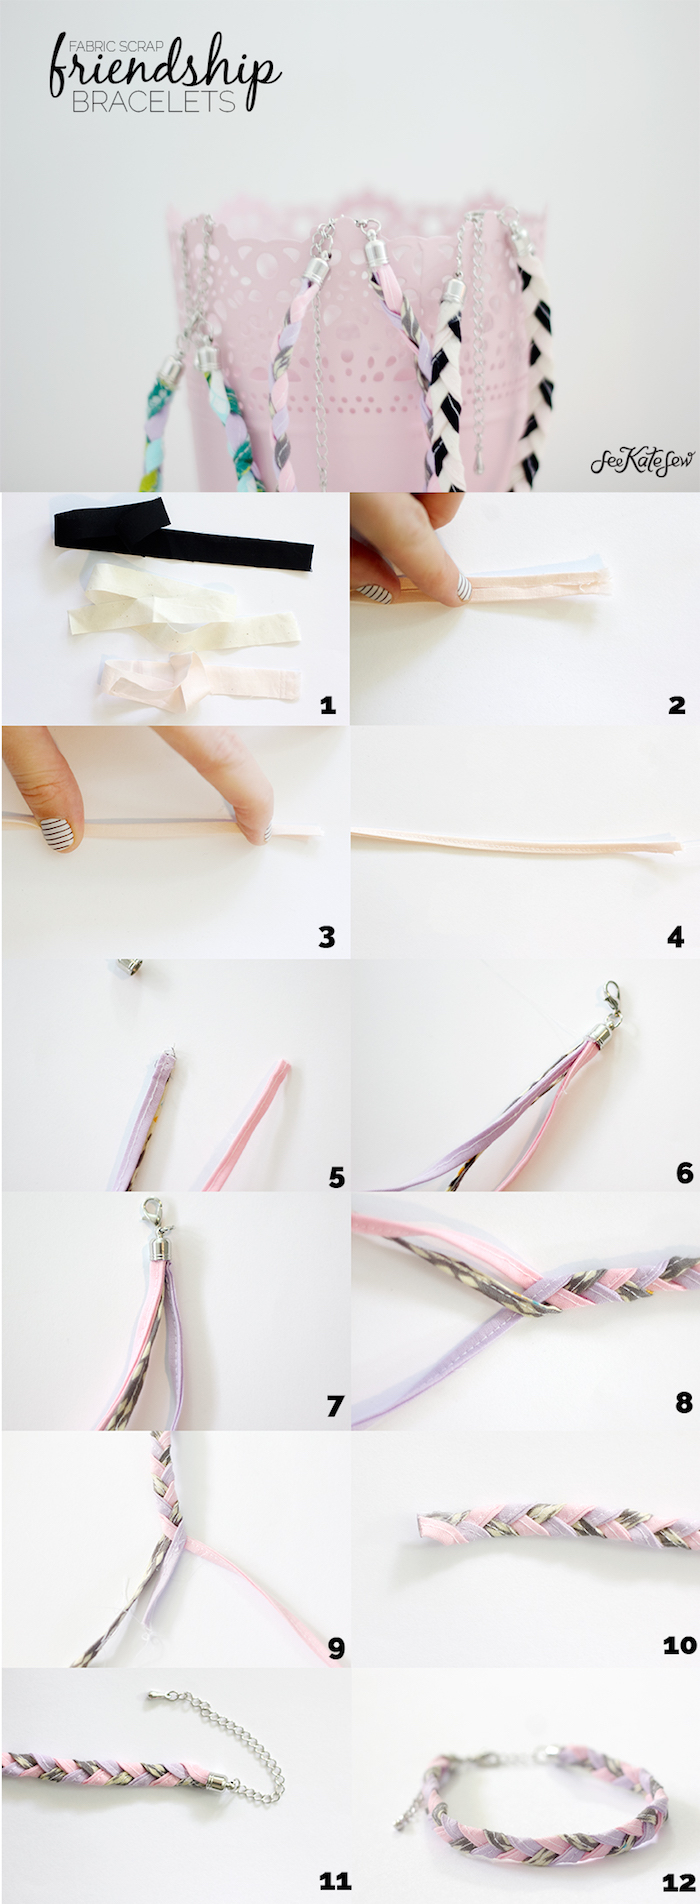 exemple idée cadeau couture avec des bandes de tissu entrelacées pour faire un bracelet amitié